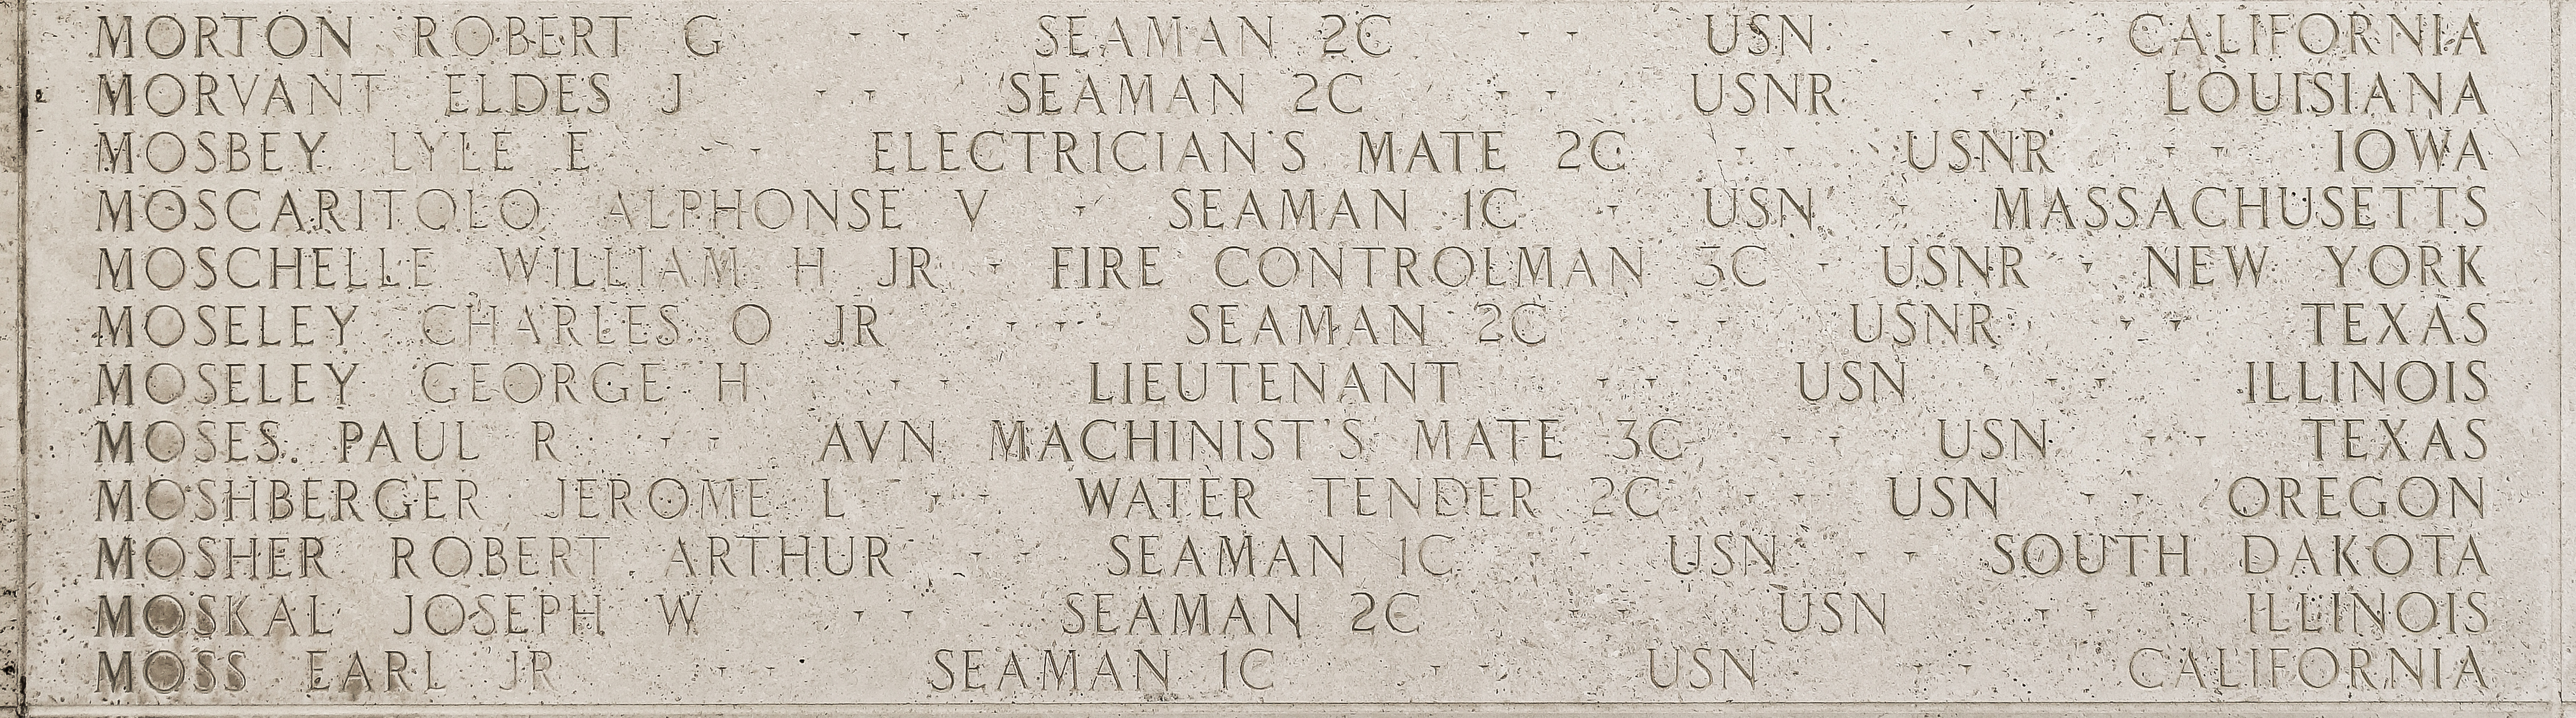 William H. Moschelle, Fire Controlman Third Class